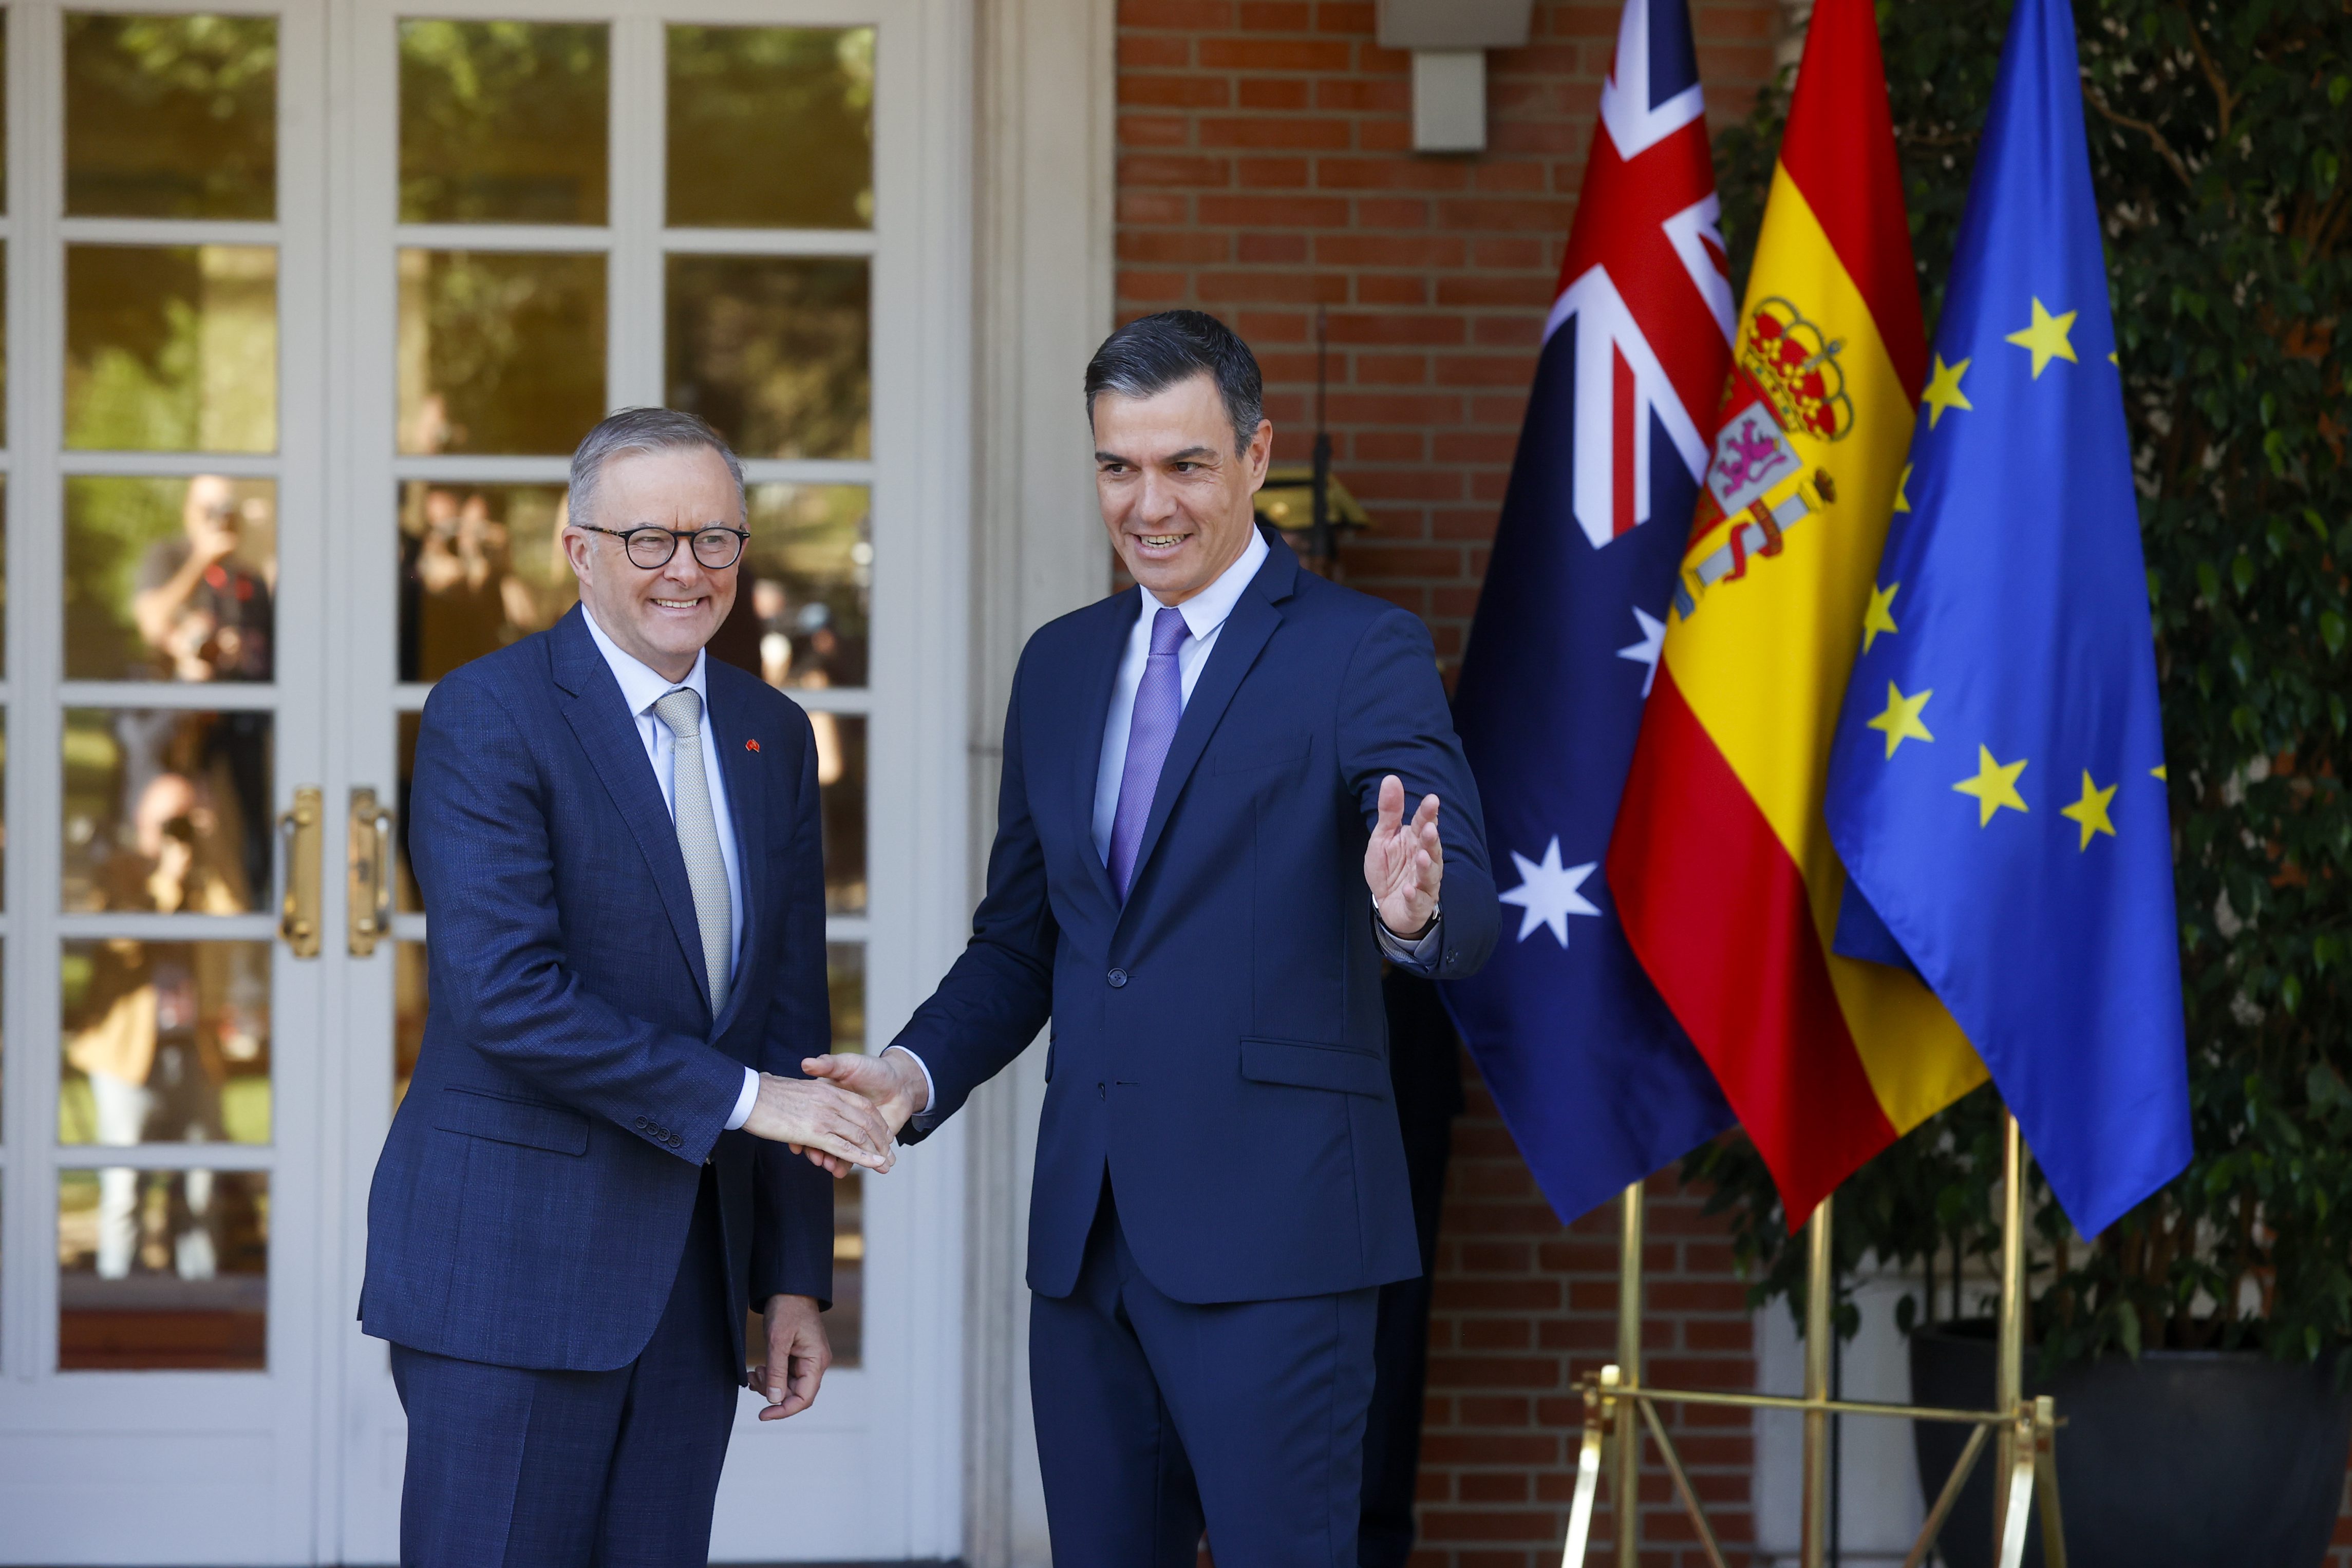 นายกรัฐมนตรีเปโดร ซานเชซ (ขวา) ต้อนรับนายกรัฐมนตรีออสเตรเลีย แอนโธนี อัลบานีส (ซ้าย) ในวันจันทร์ที่ Palacio de la Moncloa ซึ่งเป็นส่วนหนึ่งของการประชุมสุดยอดนาโต้